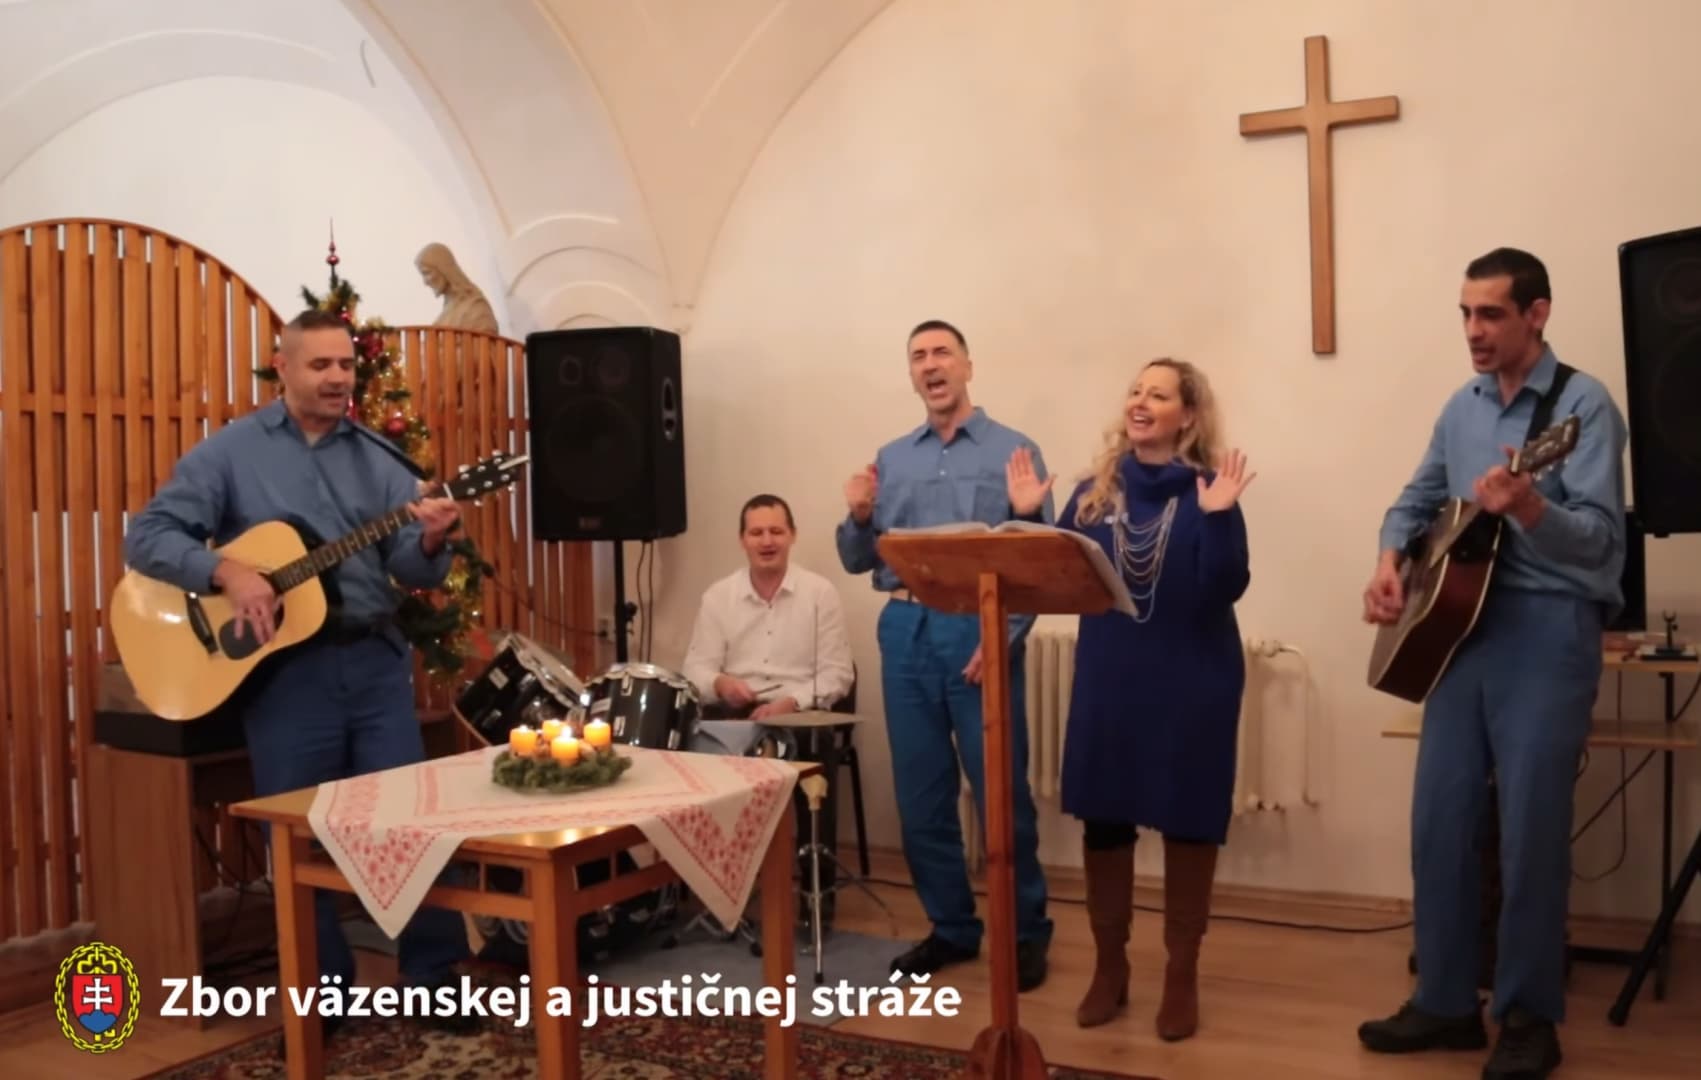 Nagyot énekelt isten dicsőségéért a szlovák maffiafőnök (VIDEÓ)